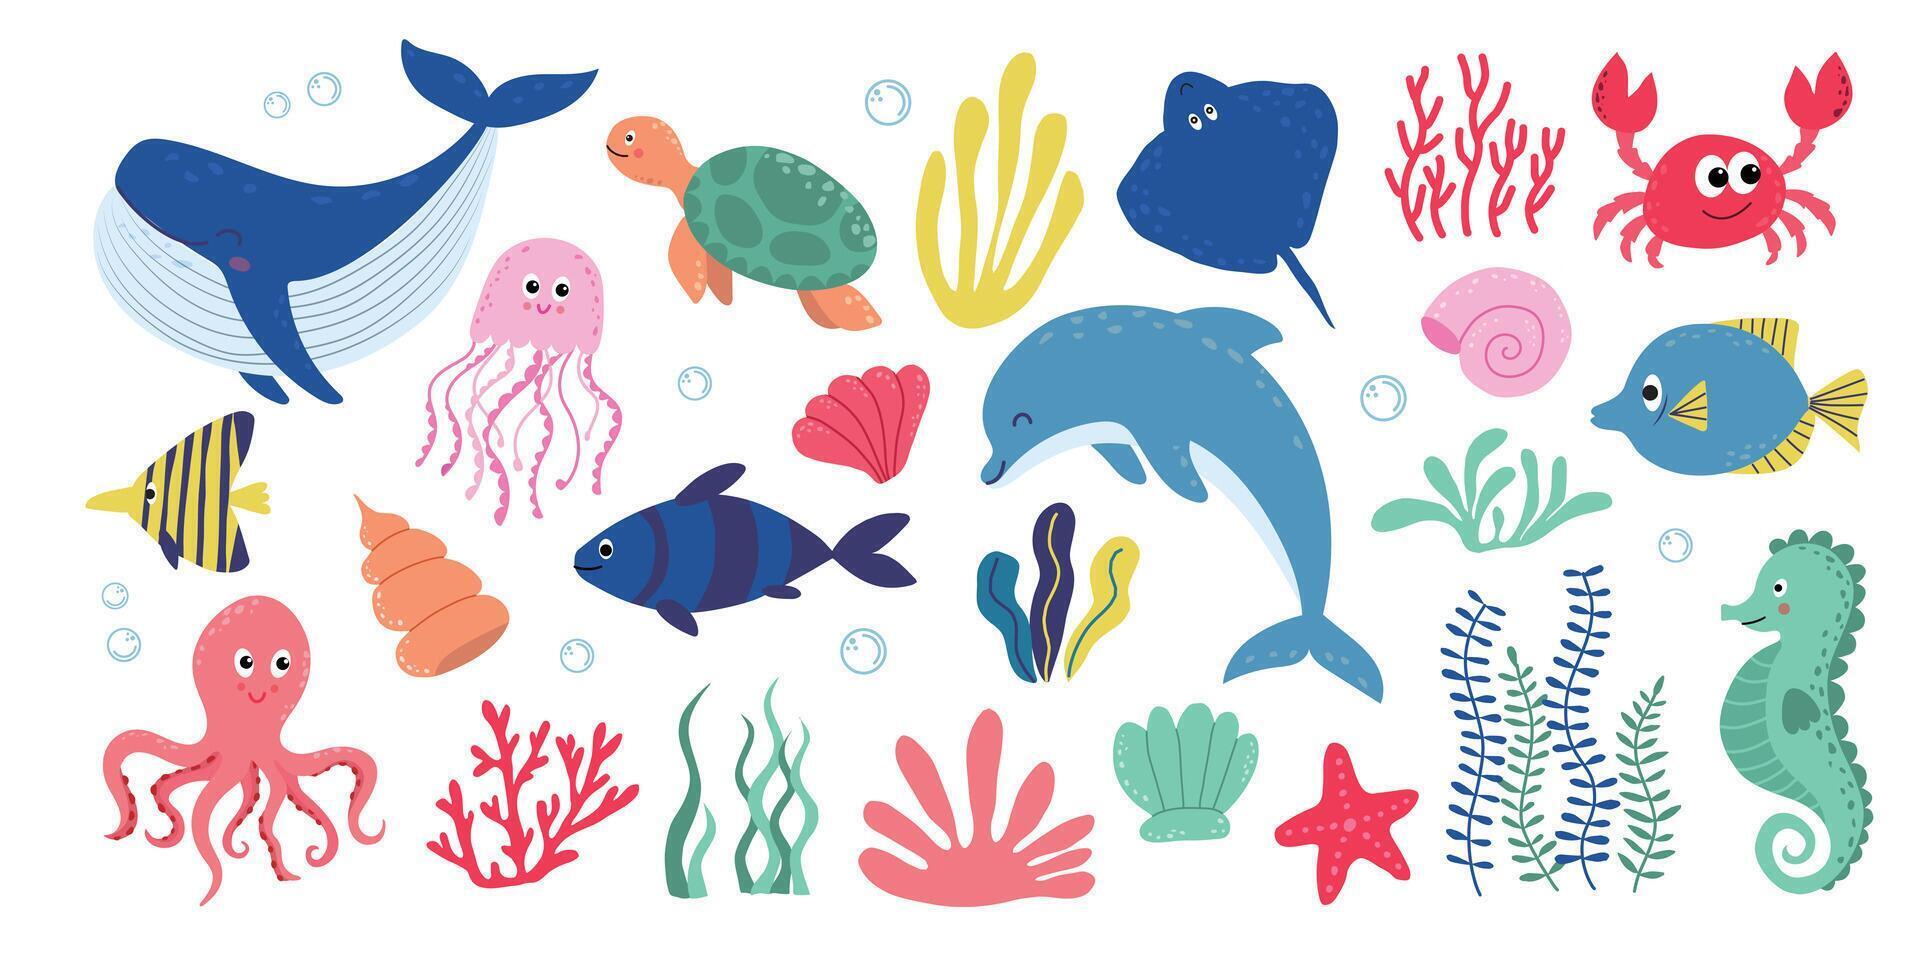 Cute aquatic animals, shells and plants vector